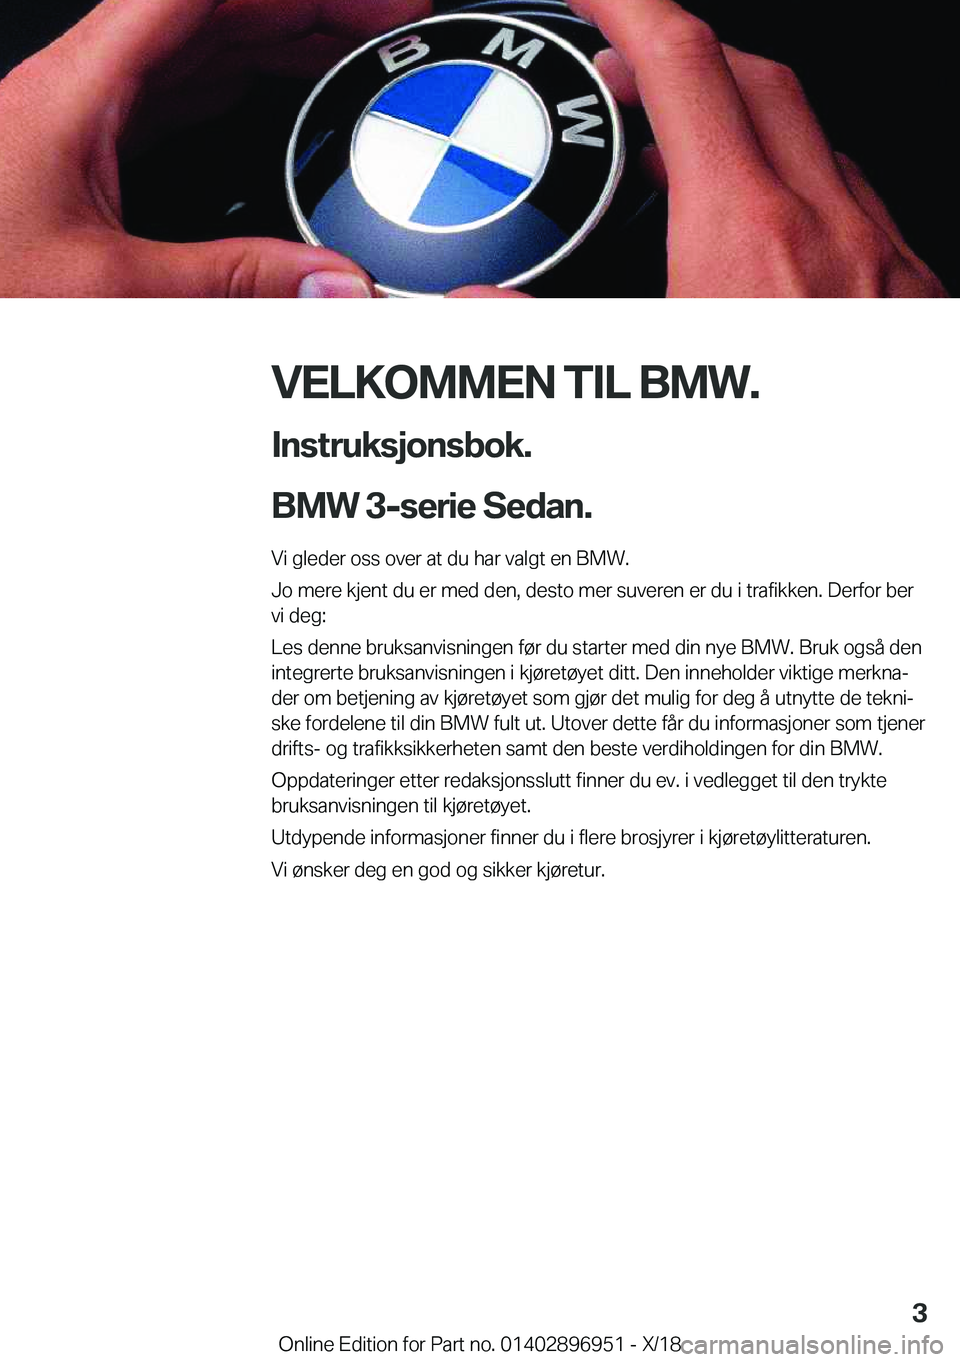 BMW 3 SERIES 2019  InstruksjonsbØker (in Norwegian) �V�E�L�K�O�M�M�E�N��T�I�L��B�M�W�.�I�n�s�t�r�u�k�s�j�o�n�s�b�o�k�.
�B�M�W��3�-�s�e�r�i�e��S�e�d�a�n�.
�V�i��g�l�e�d�e�r��o�s�s��o�v�e�r��a�t��d�u��h�a�r��v�a�l�g�t��e�n��B�M�W�.
�J�o��m�